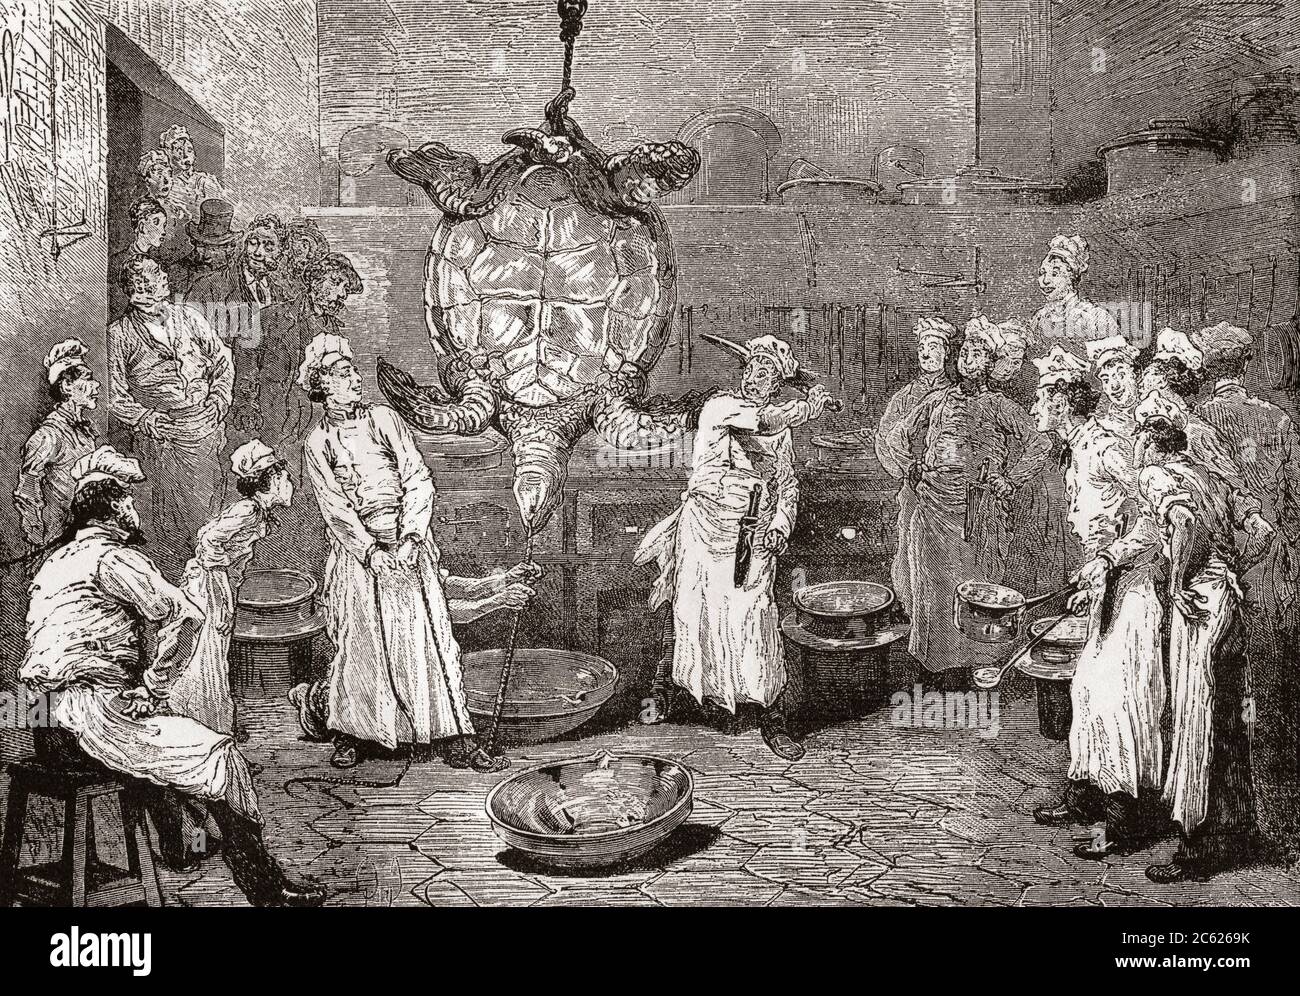 Eine Schildkröte in einem Pariser Restaurant enthaupten. Ein Koch bereitet sich darauf vor, die Schildkröte zu enthaupten, während das Personal darauf schaut, eine Schüssel wird auf den Boden gestellt, um das Blut zu fangen. Aus Paris selbst wieder, veröffentlicht, 1882. Stockfoto